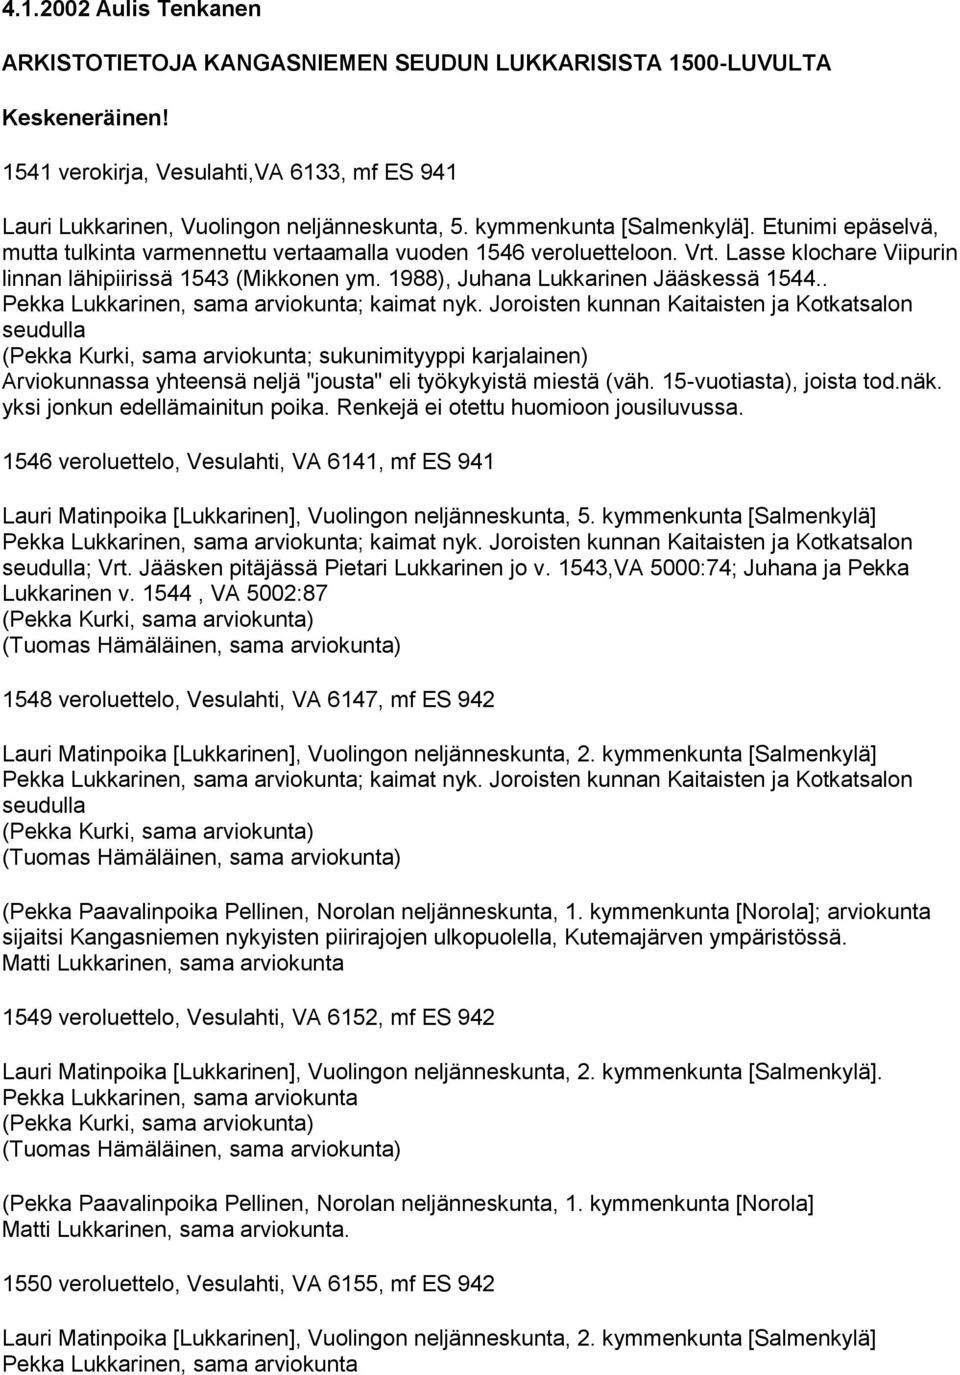 1988), Juhana Lukkarinen Jääskessä 1544.. Pekka Lukkarinen, sama arviokunta; kaimat nyk.